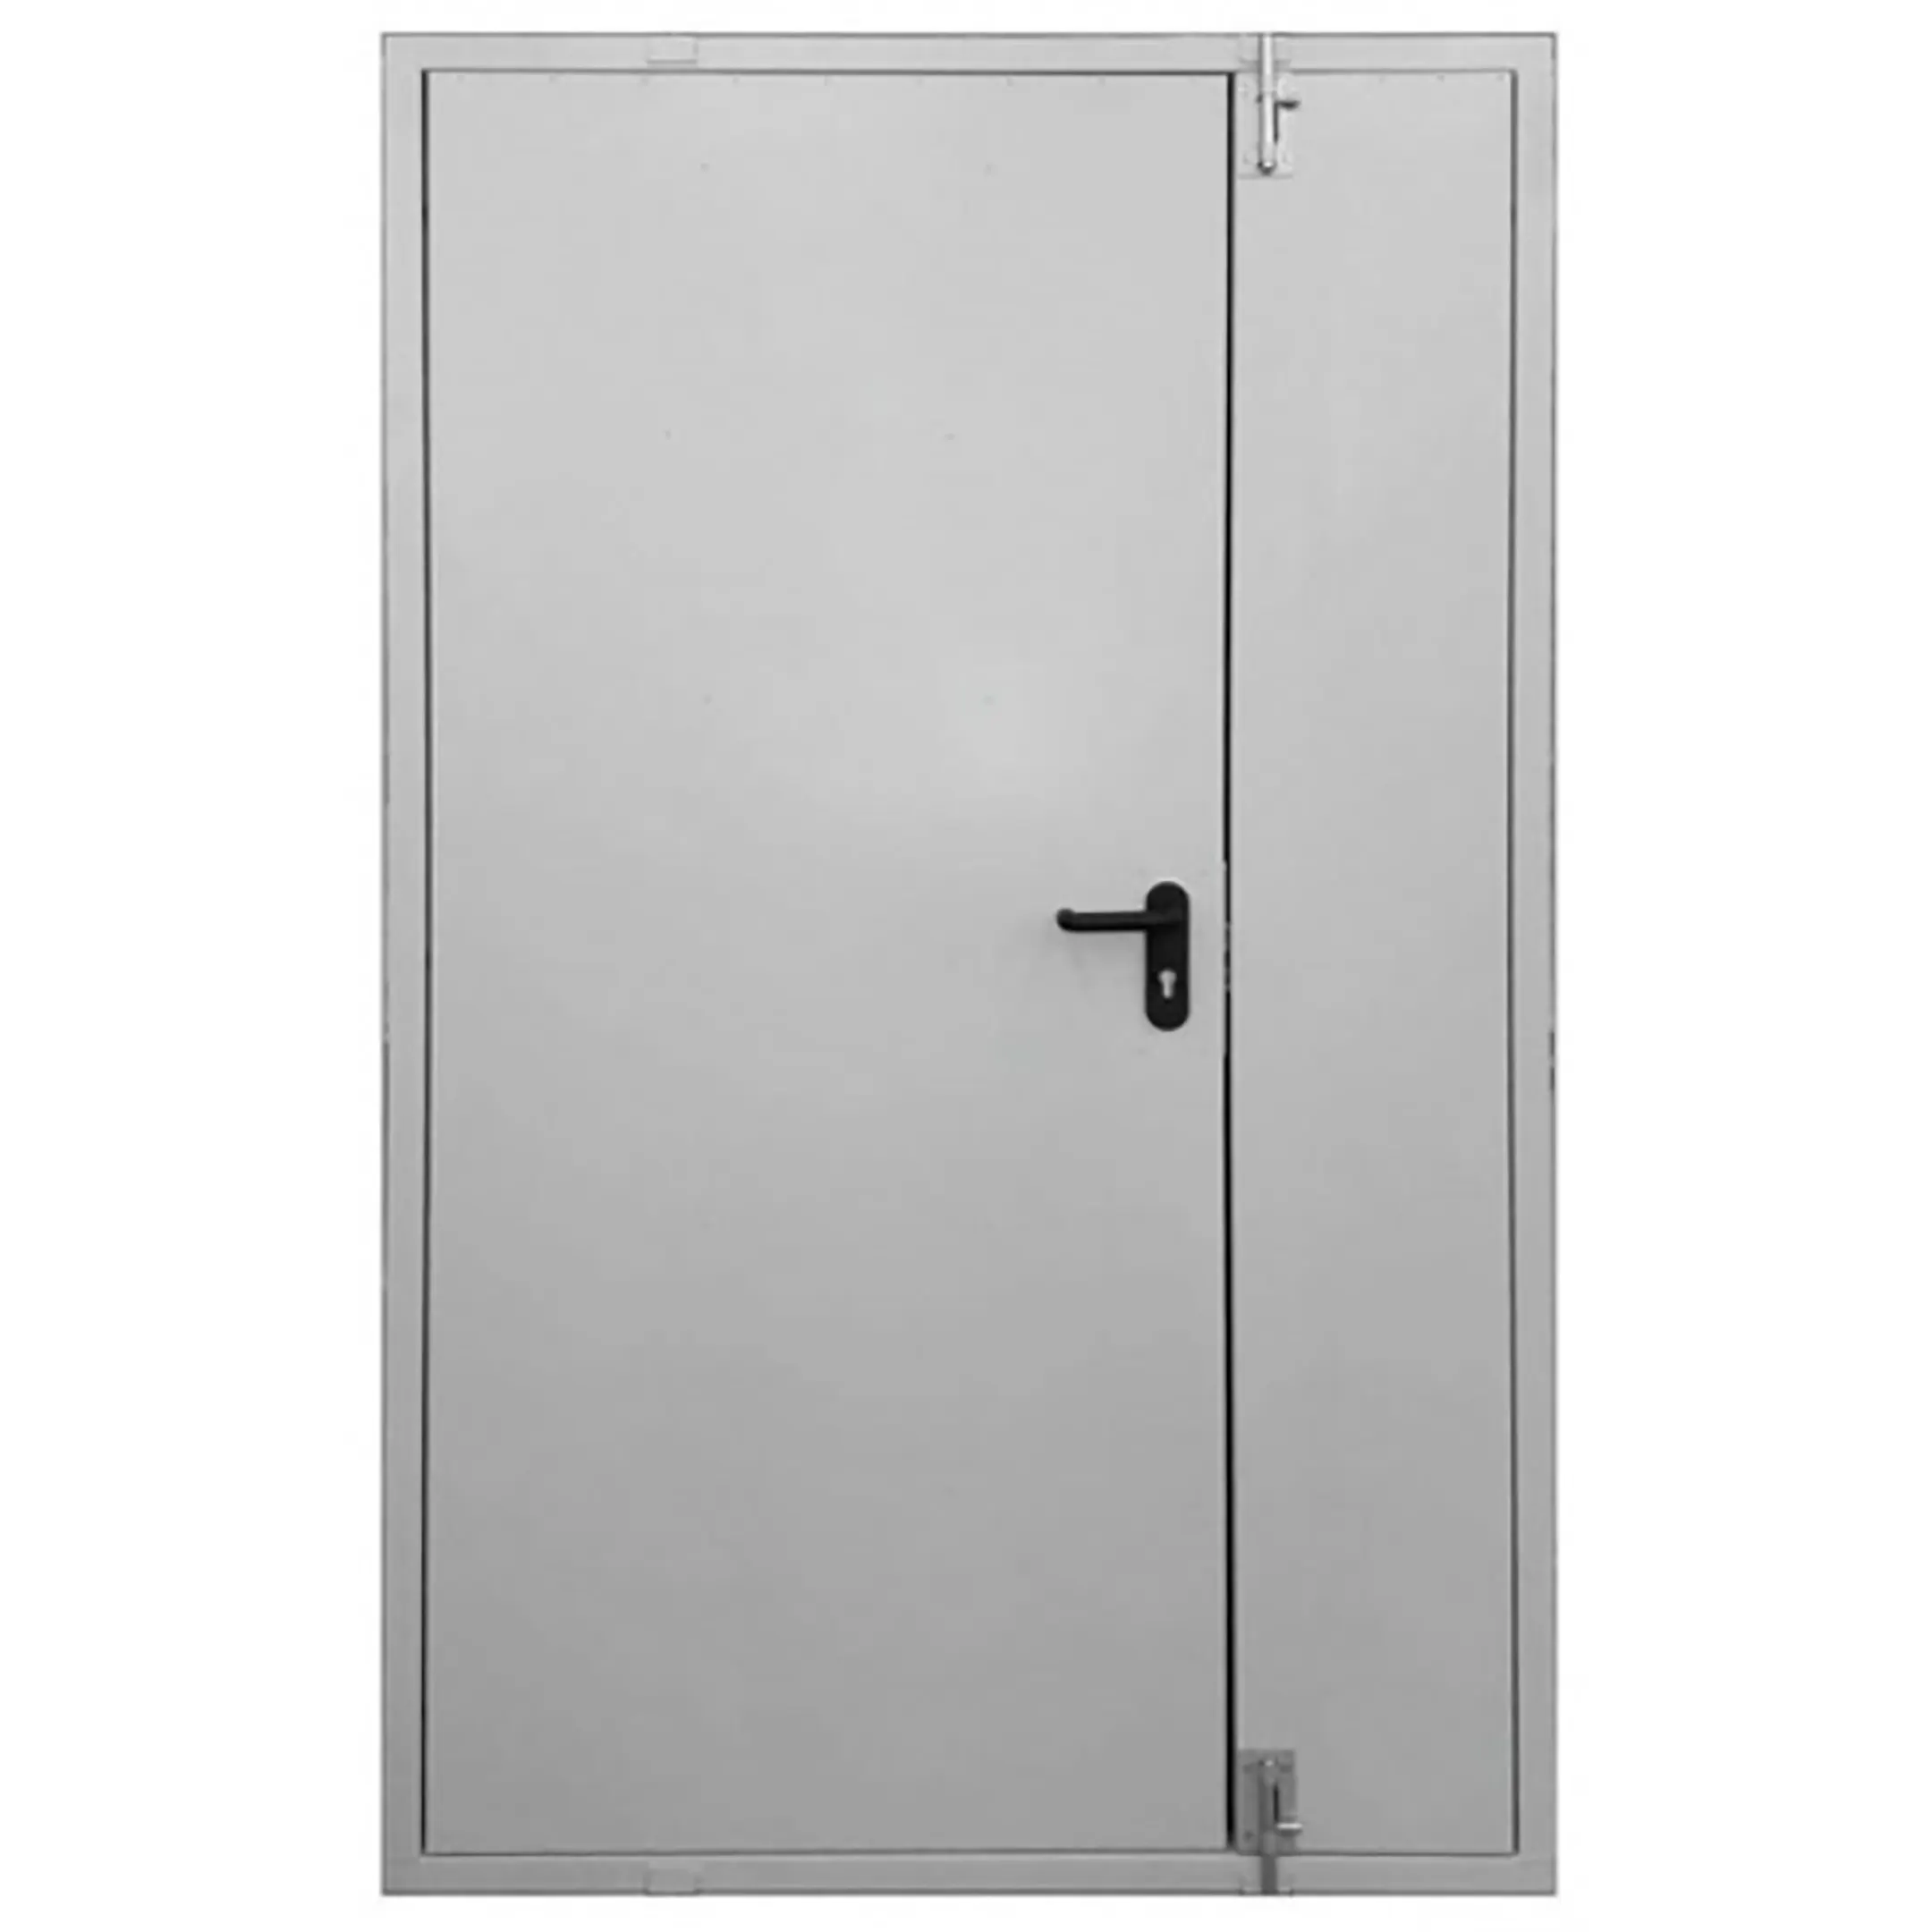 Дверь тамбурная металлическая ДТ-2-1400х2100